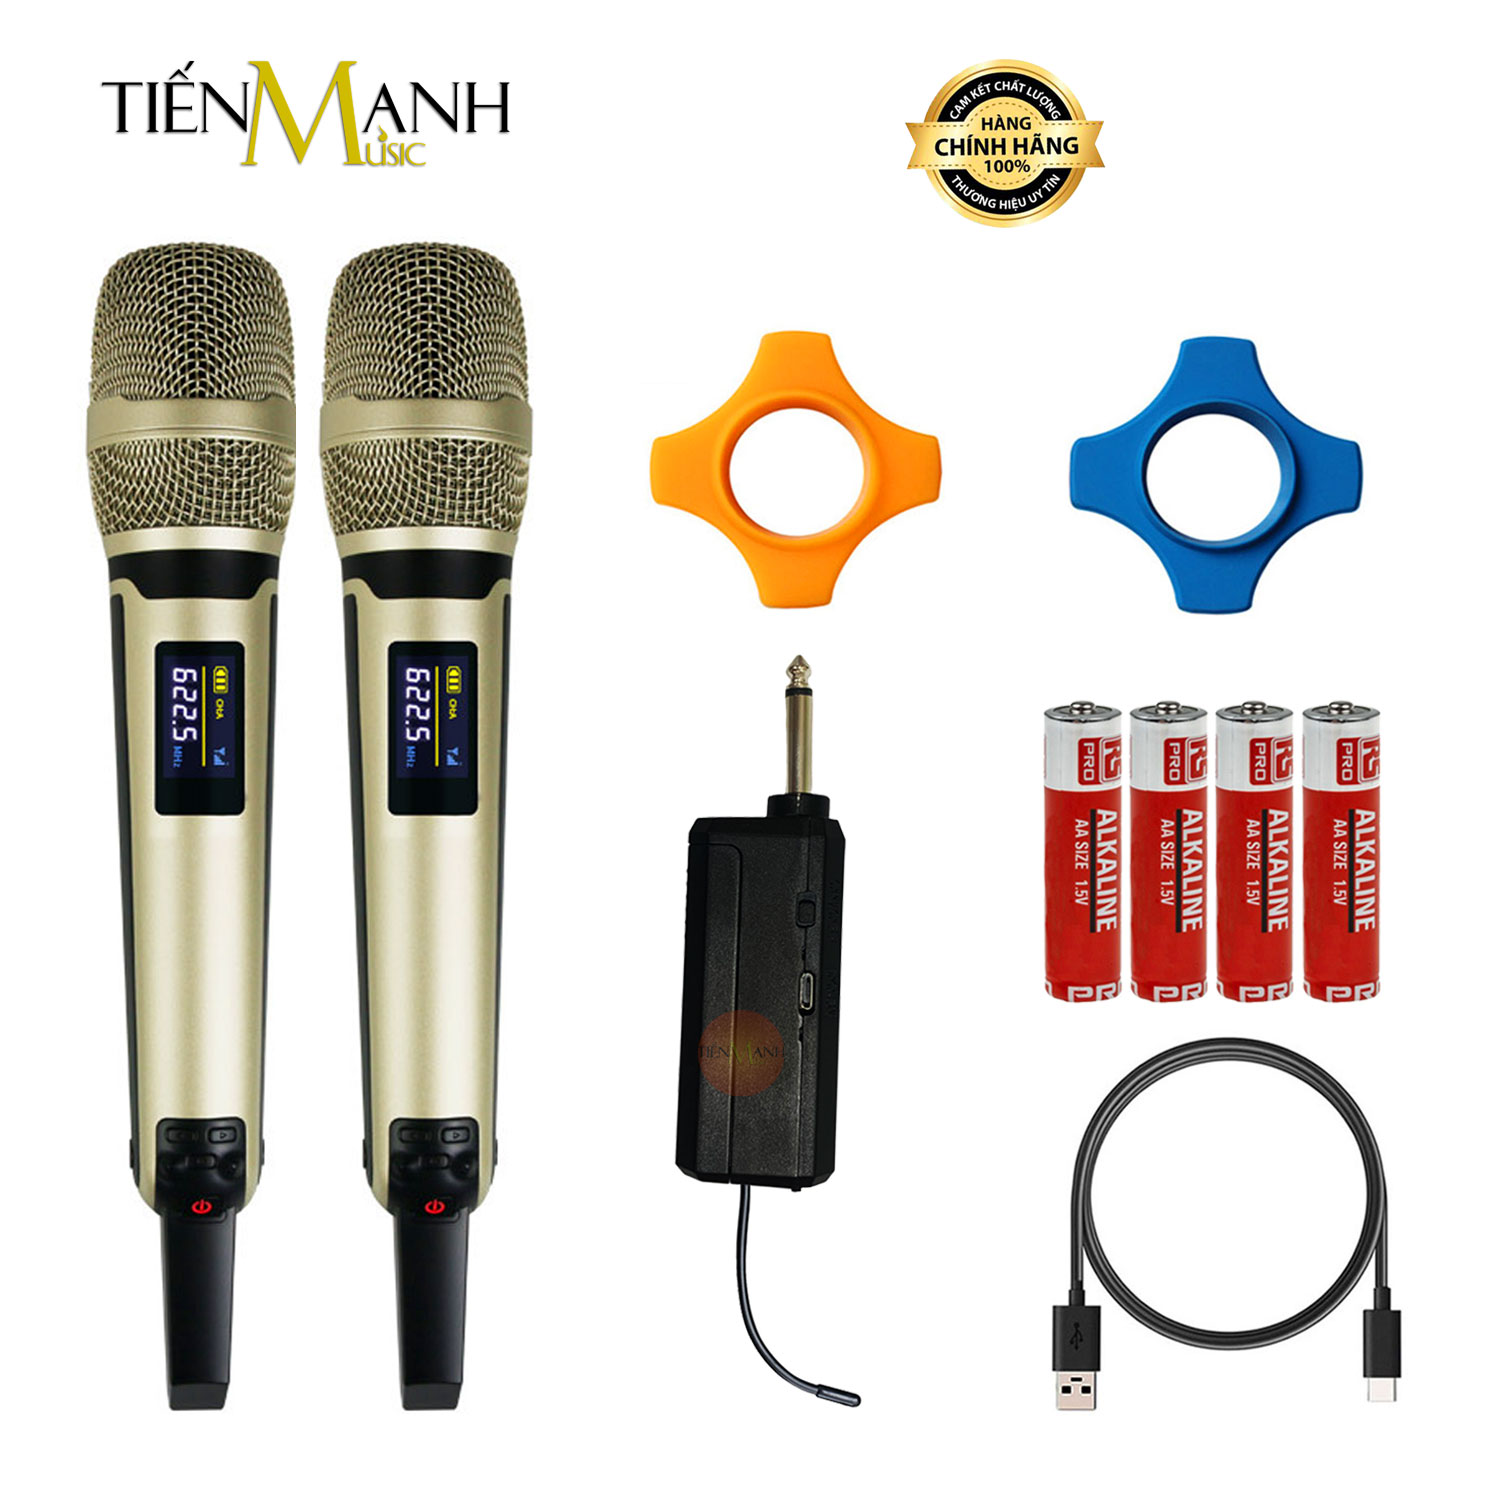 [Không Dây] Bộ 2 Mic Wireless Pin Sạc Dr Mic S9000 - Micro Cầm Tay Vocal Audio Microphone Karaoke DrMic